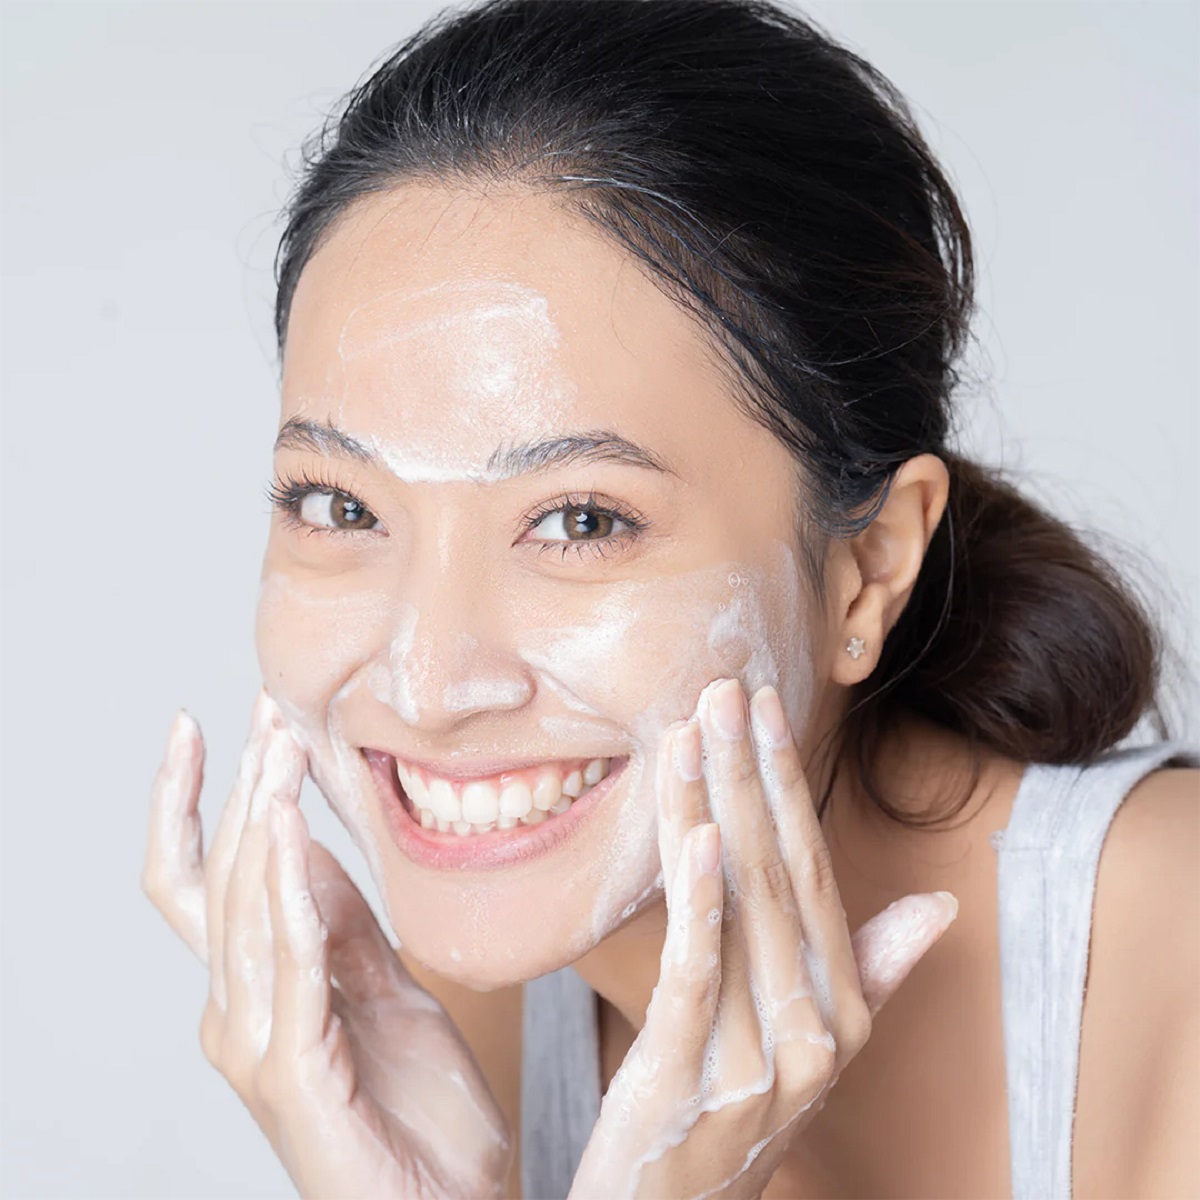 Clean Acne Skin Before You Start